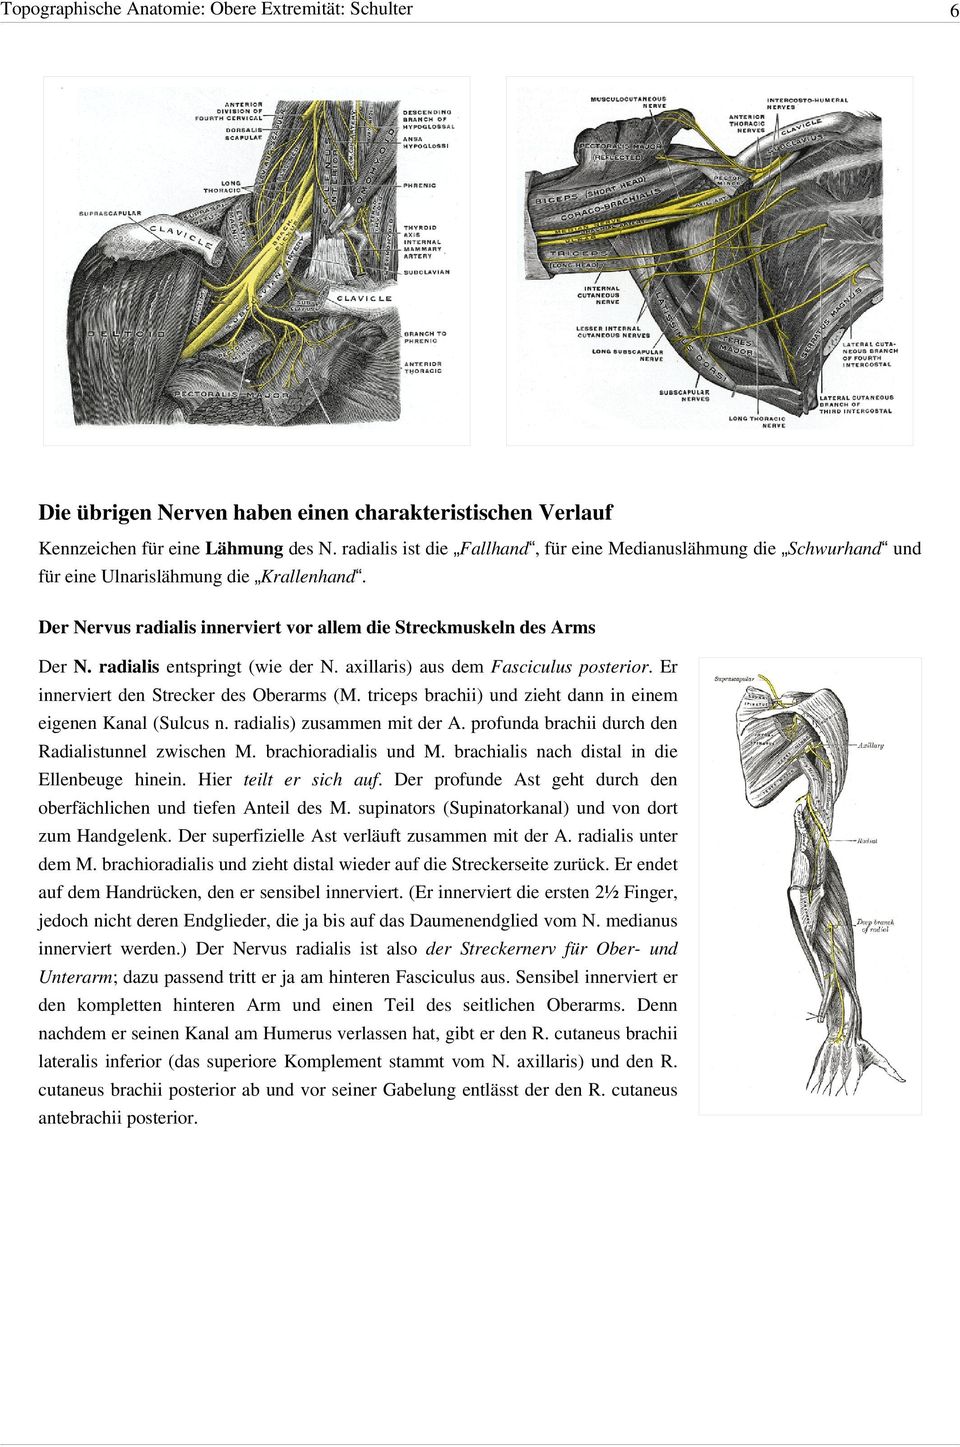 radialis entspringt (wie der N. axillaris) aus dem Fasciculus posterior. Er innerviert den Strecker des Oberarms (M. triceps brachii) und zieht dann in einem eigenen Kanal (Sulcus n.